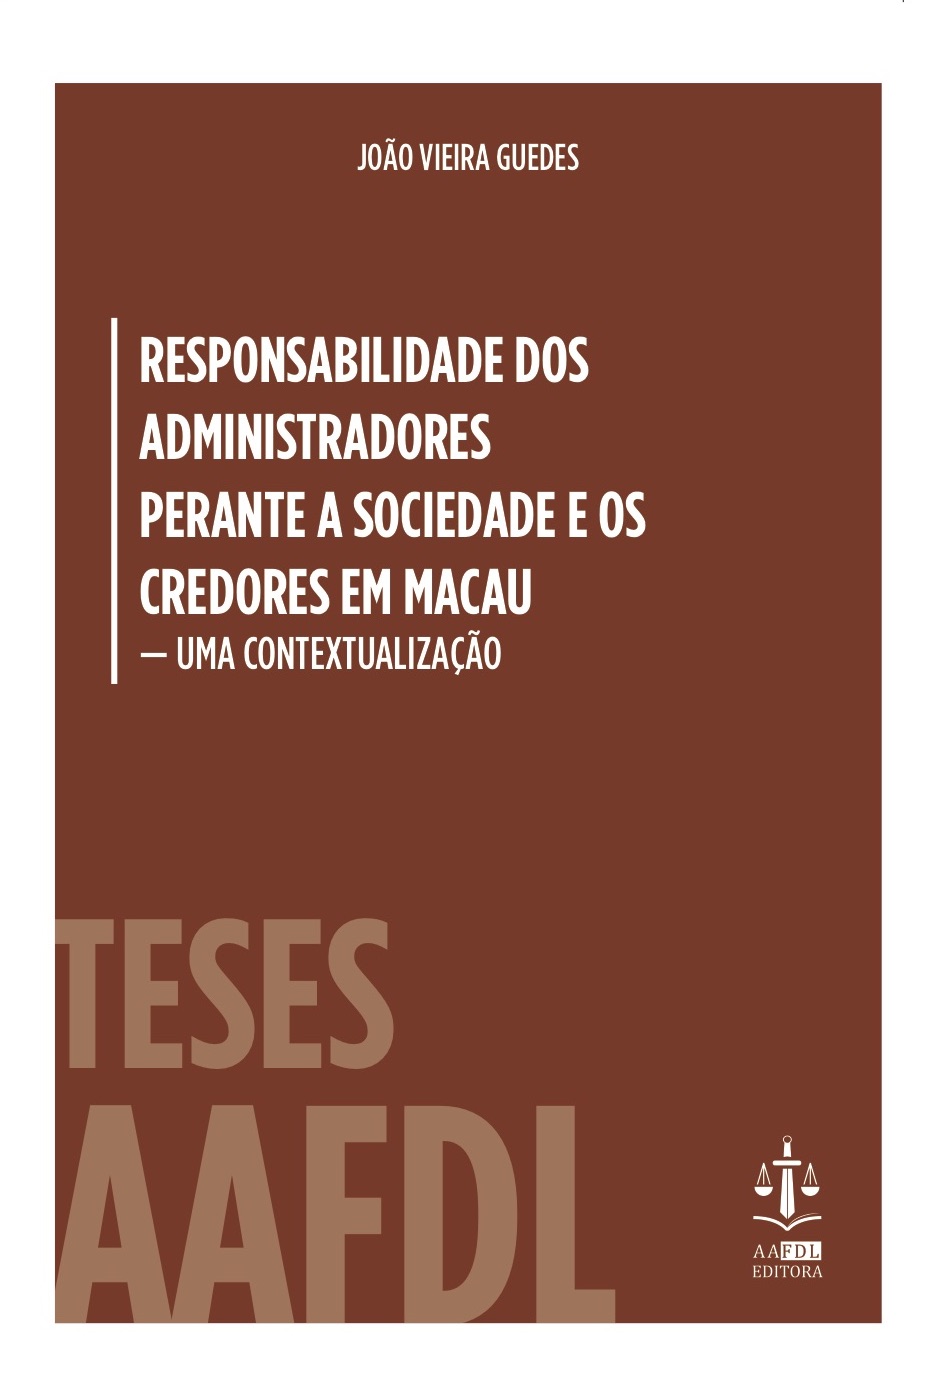 João Vieira Guedes apresenta livro na Livraria Portuguesa dia 23